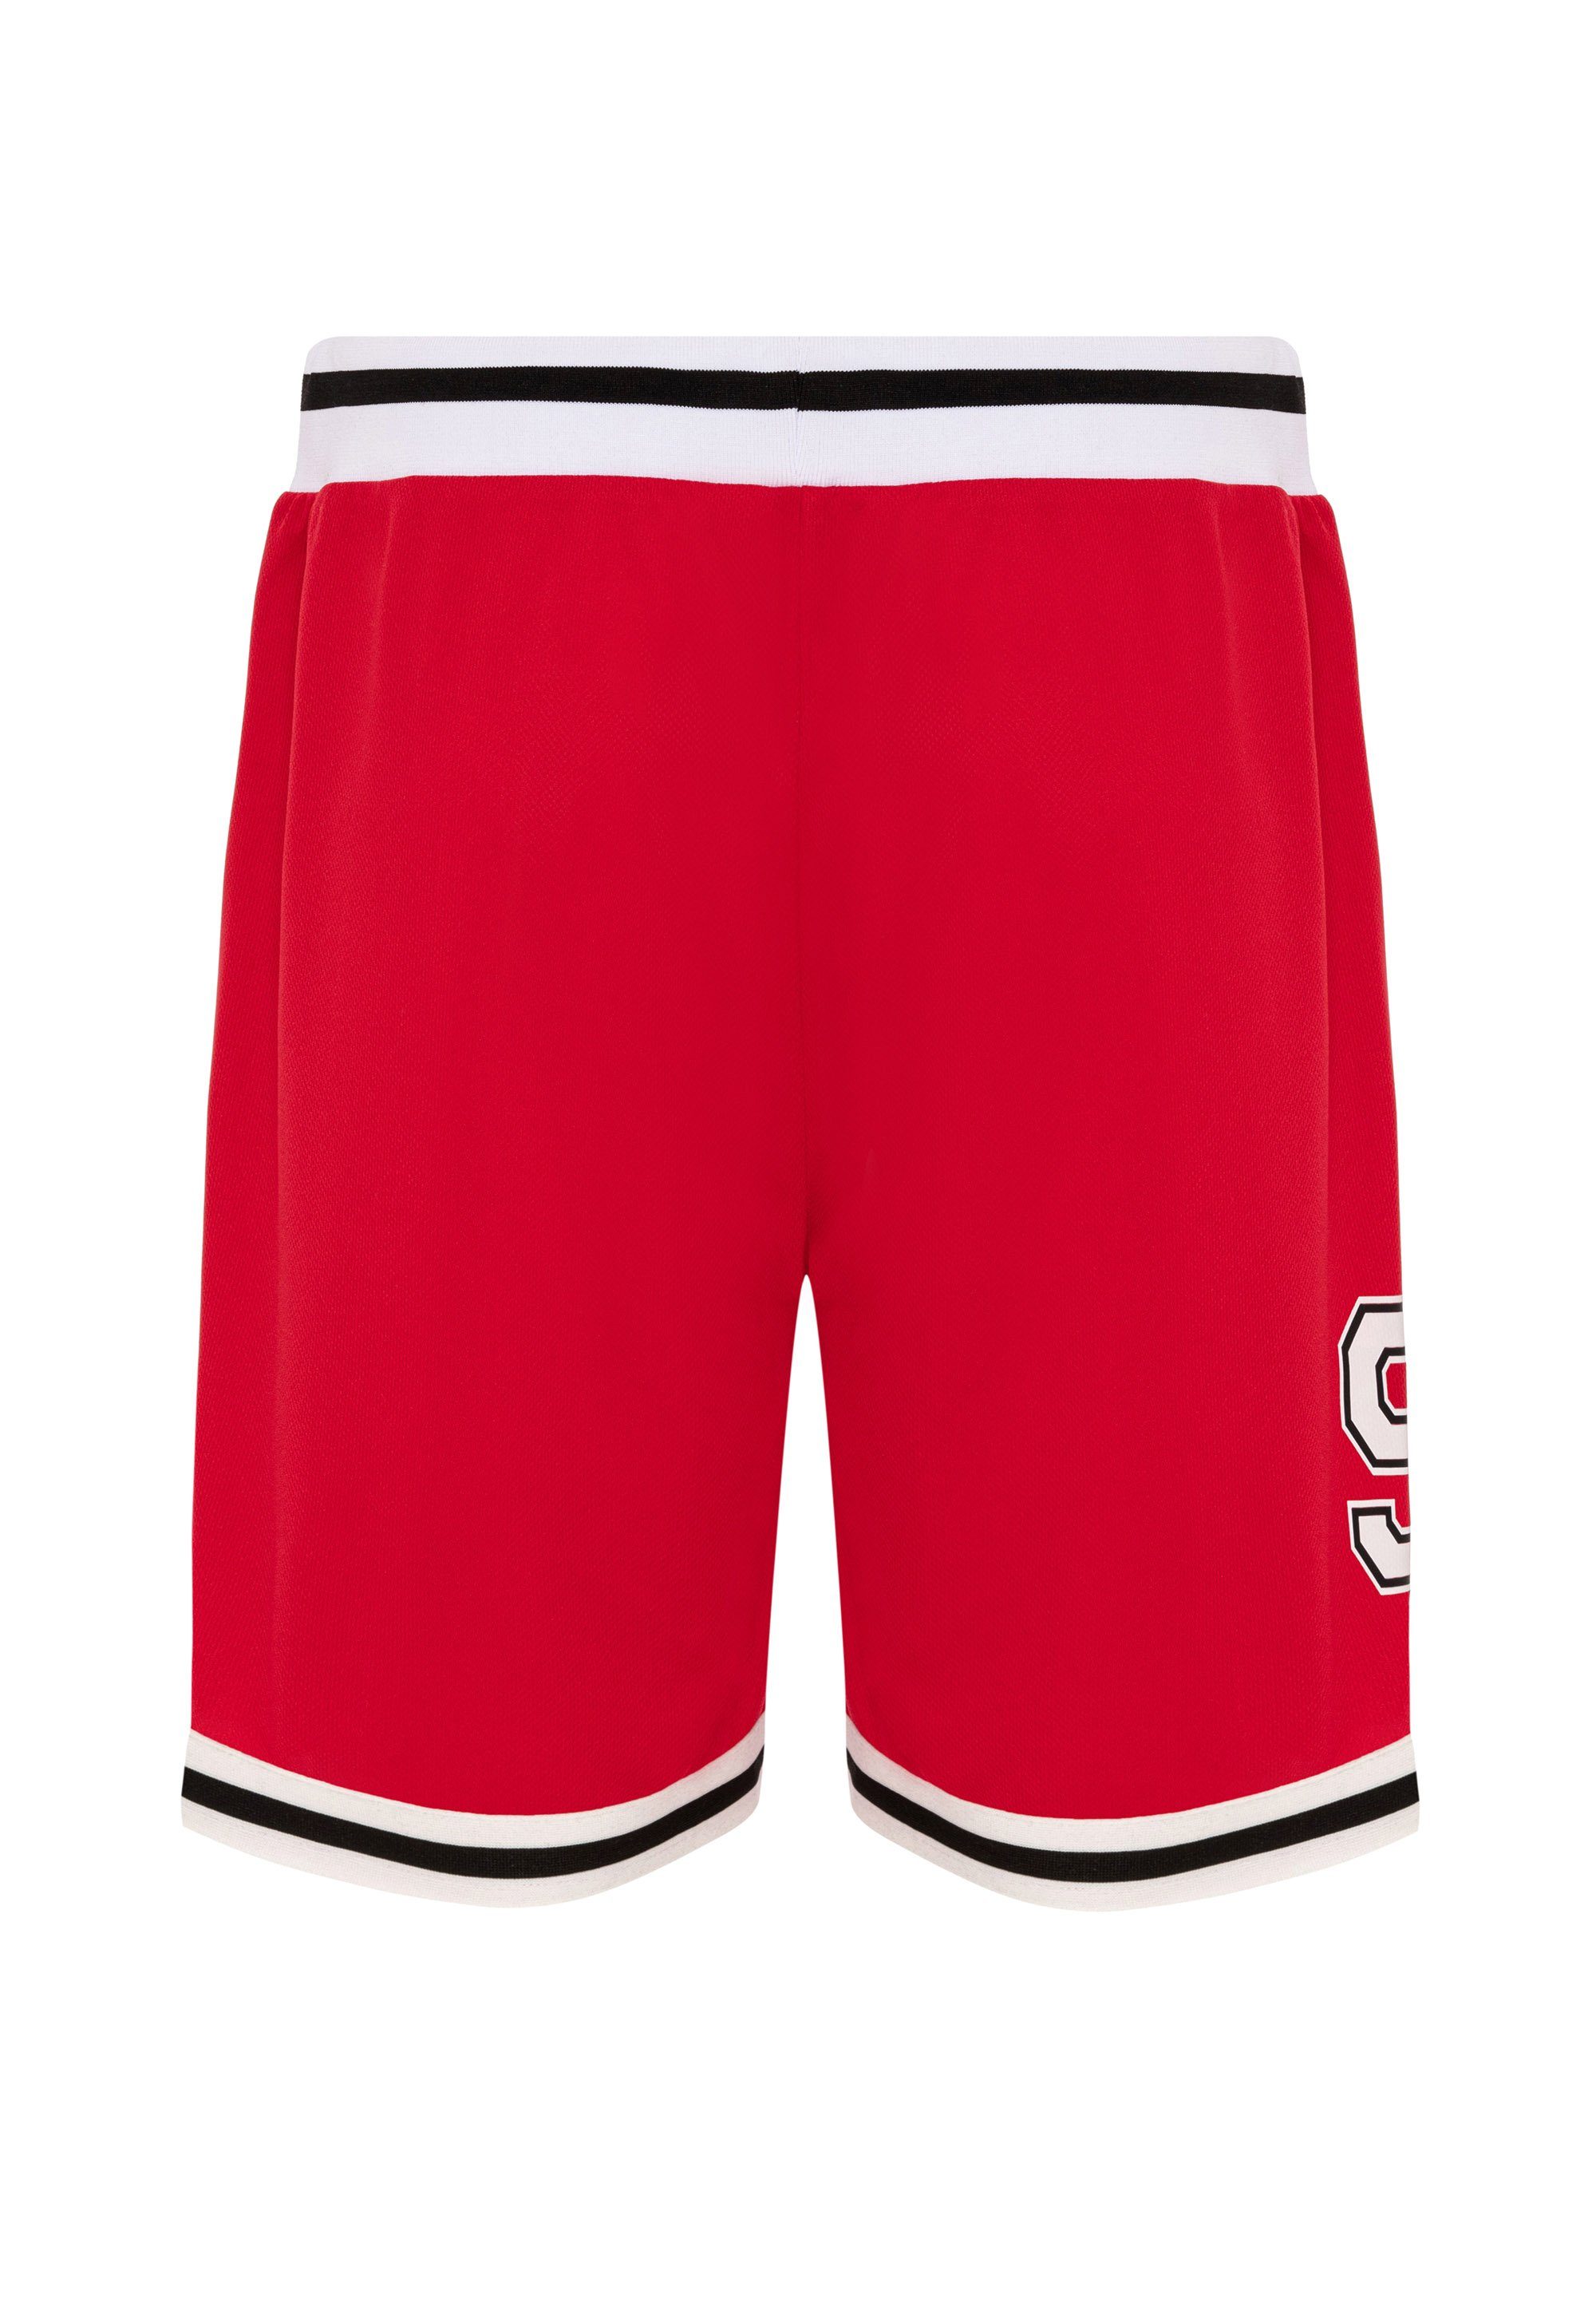 RedBridge mit Galeomaltande rot-weiß lässigen Shorts Kontraststreifen